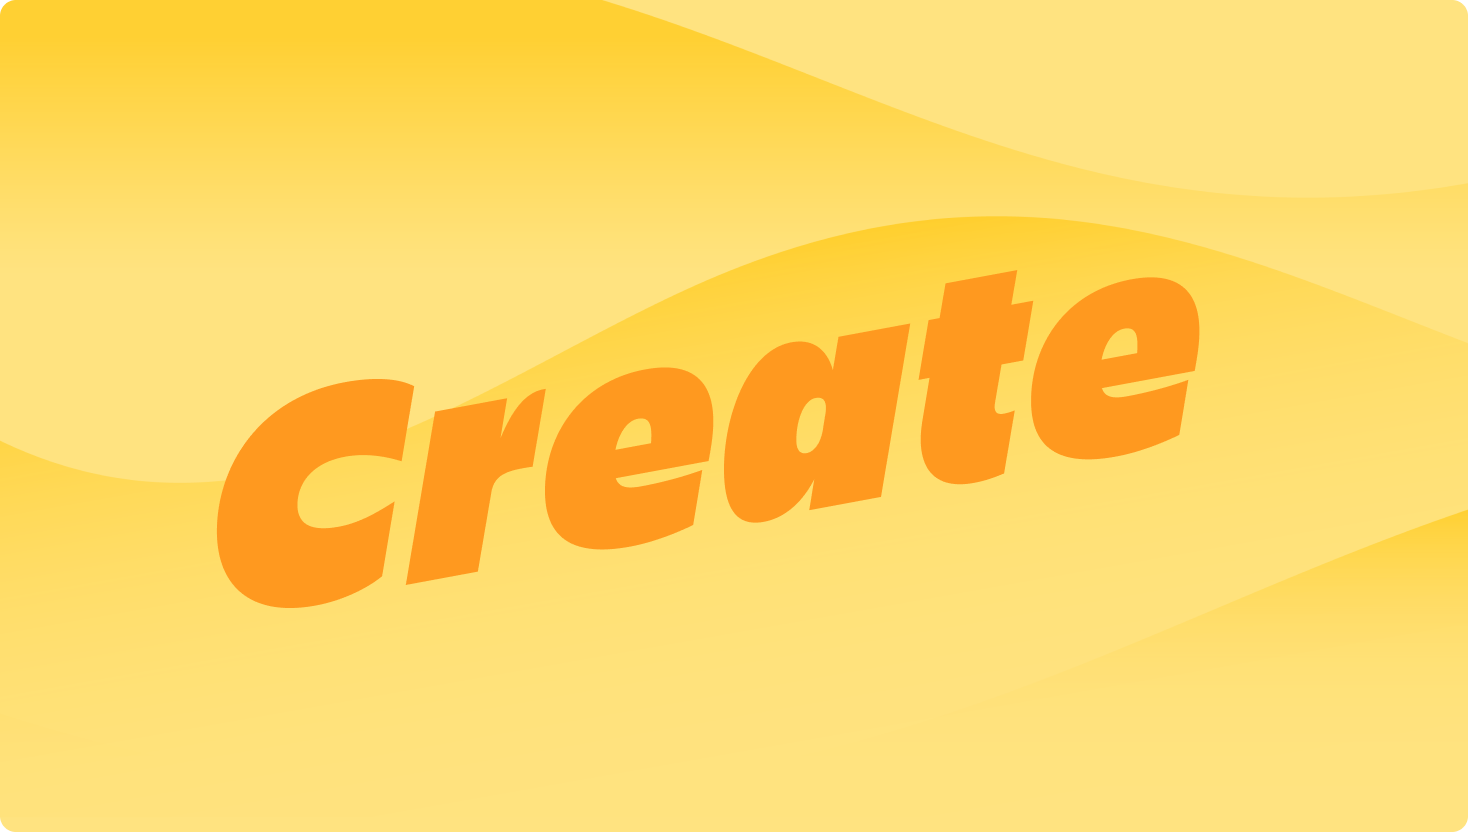 Ein gelbes Wellenbild mit dem Wort "Create" war auffällig zu sehen